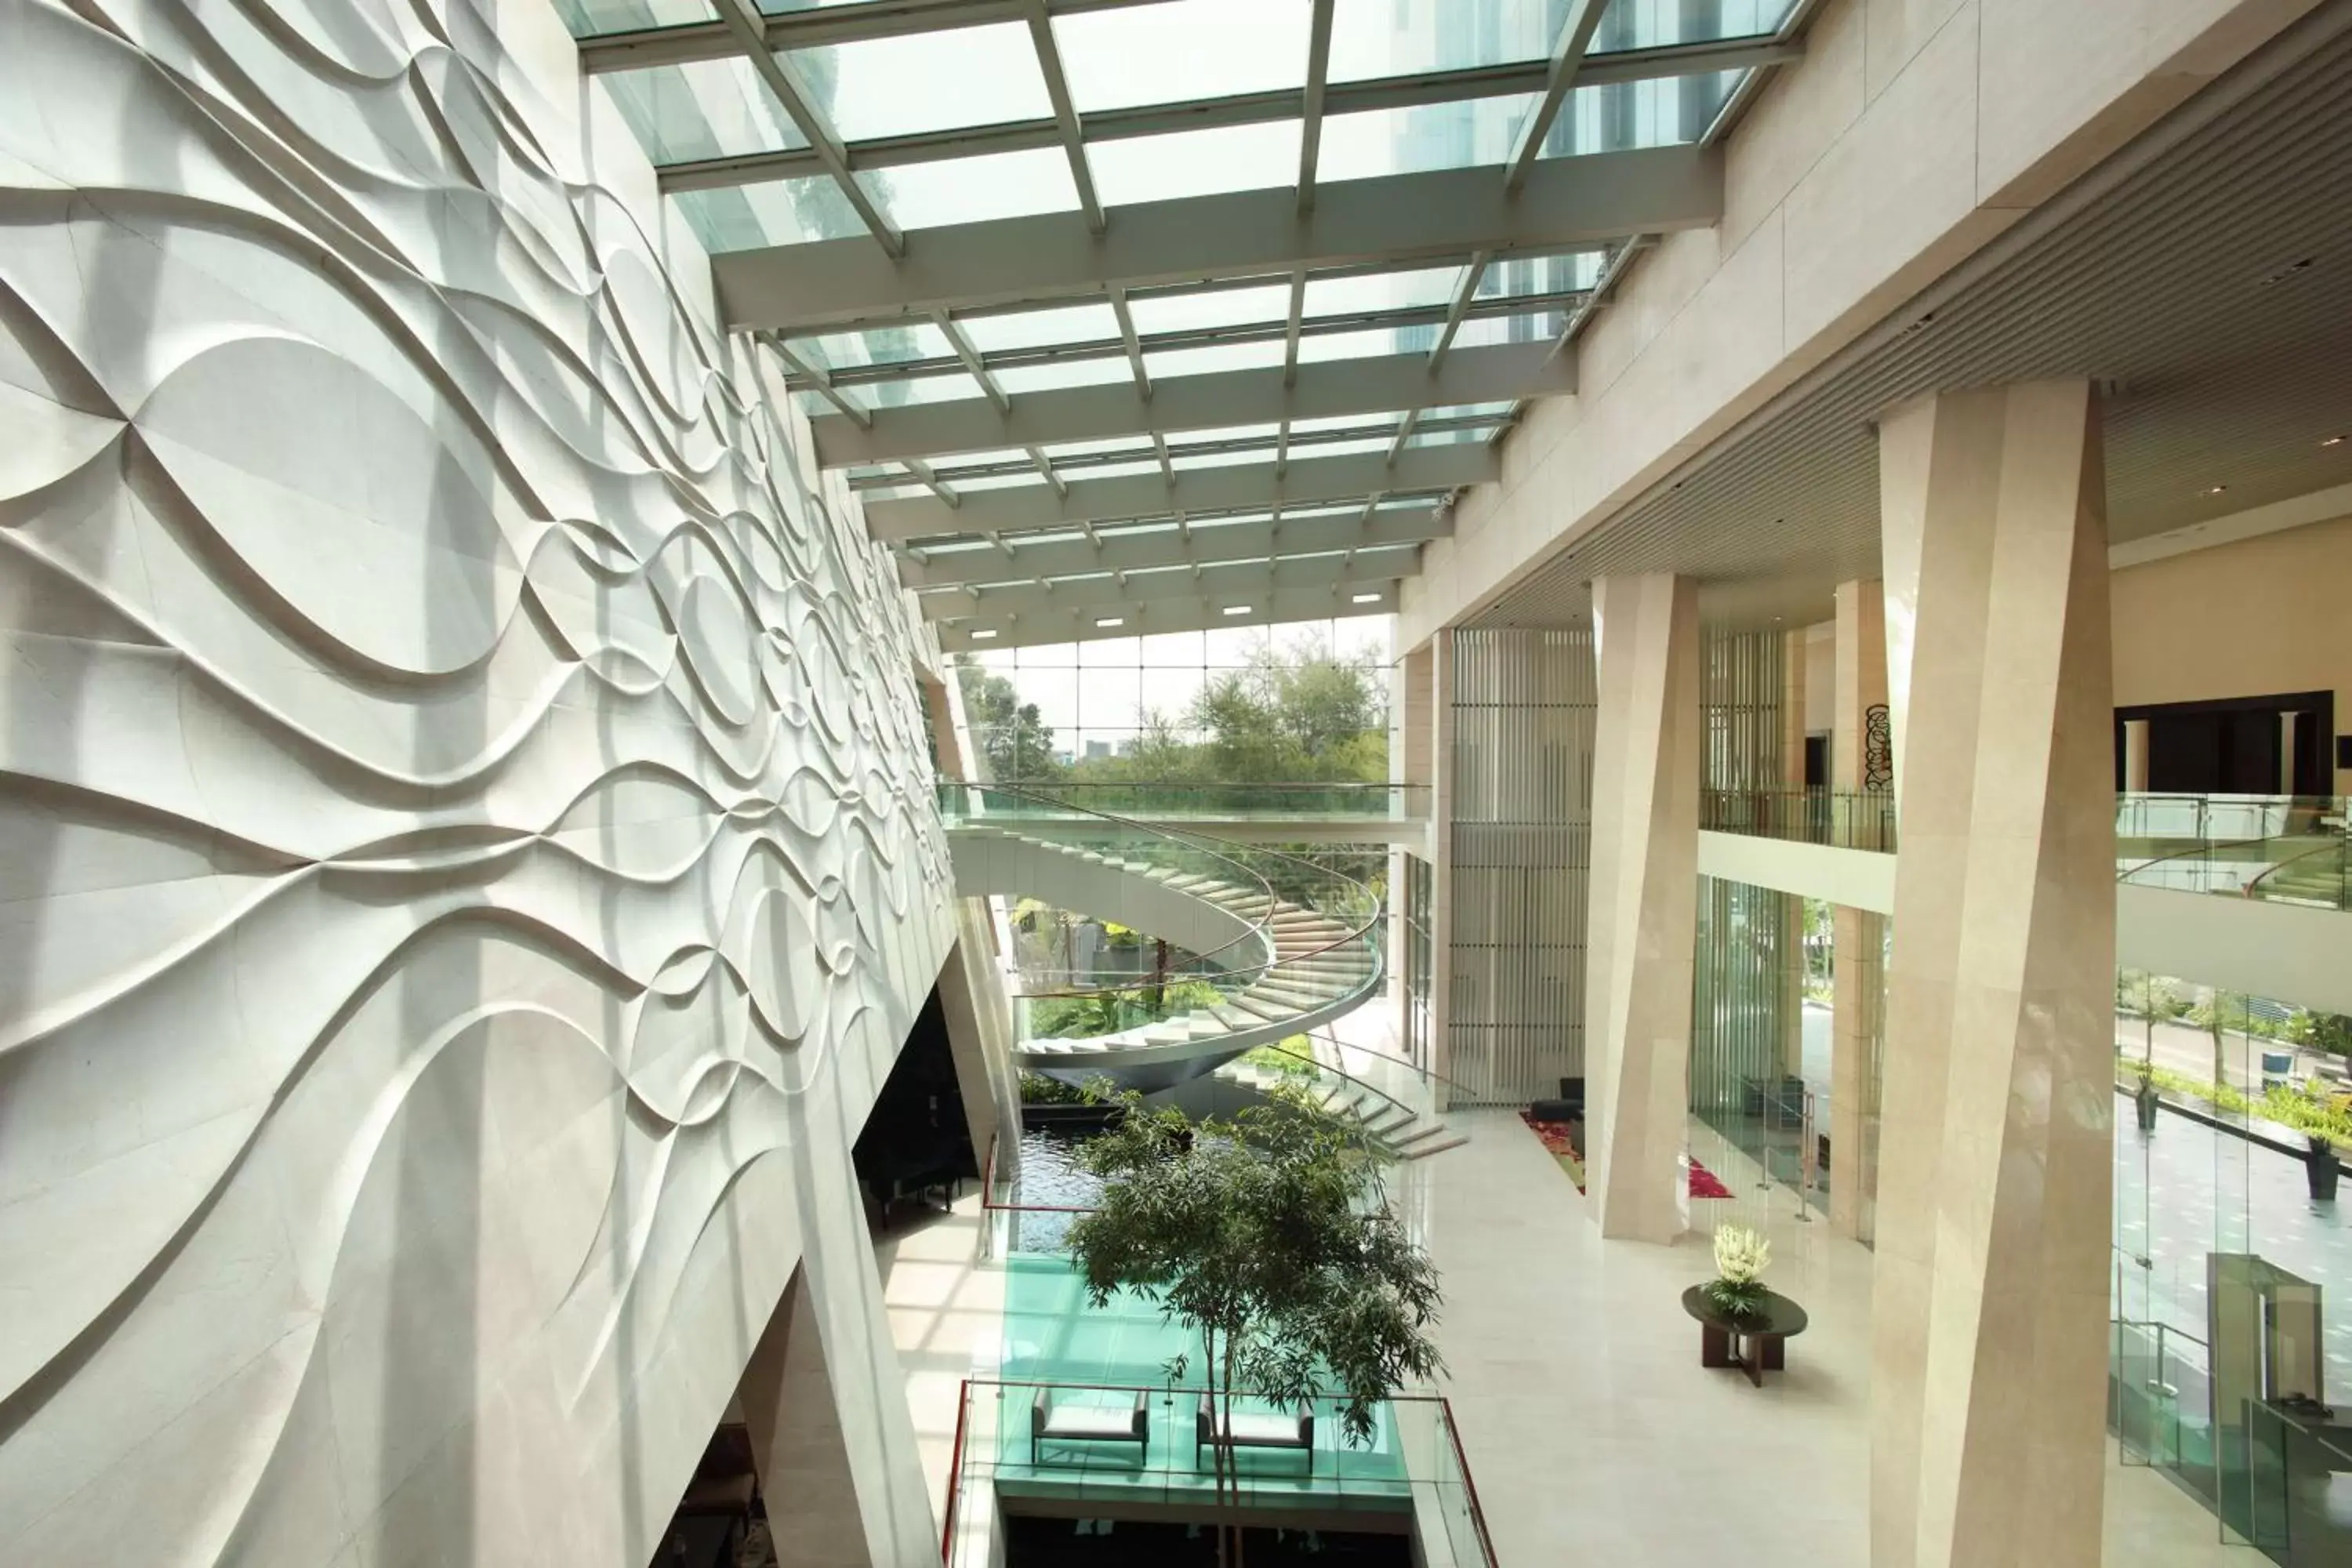 Lobby or reception in Hilton Bandung